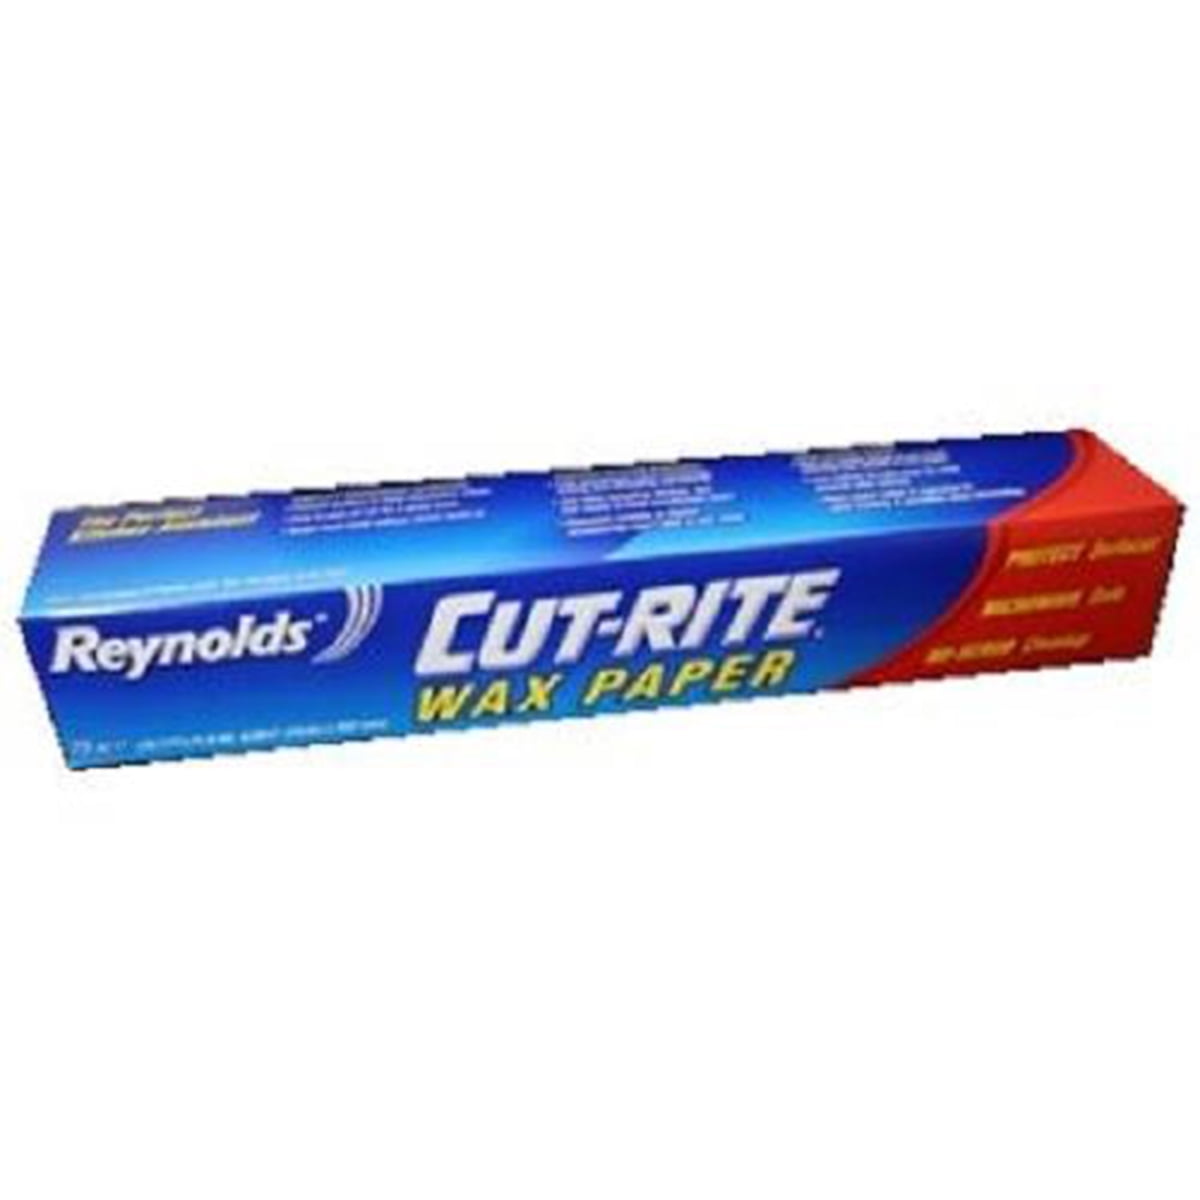 Reynolds Cut-Rite Wax Paper, 75 Square Feet 